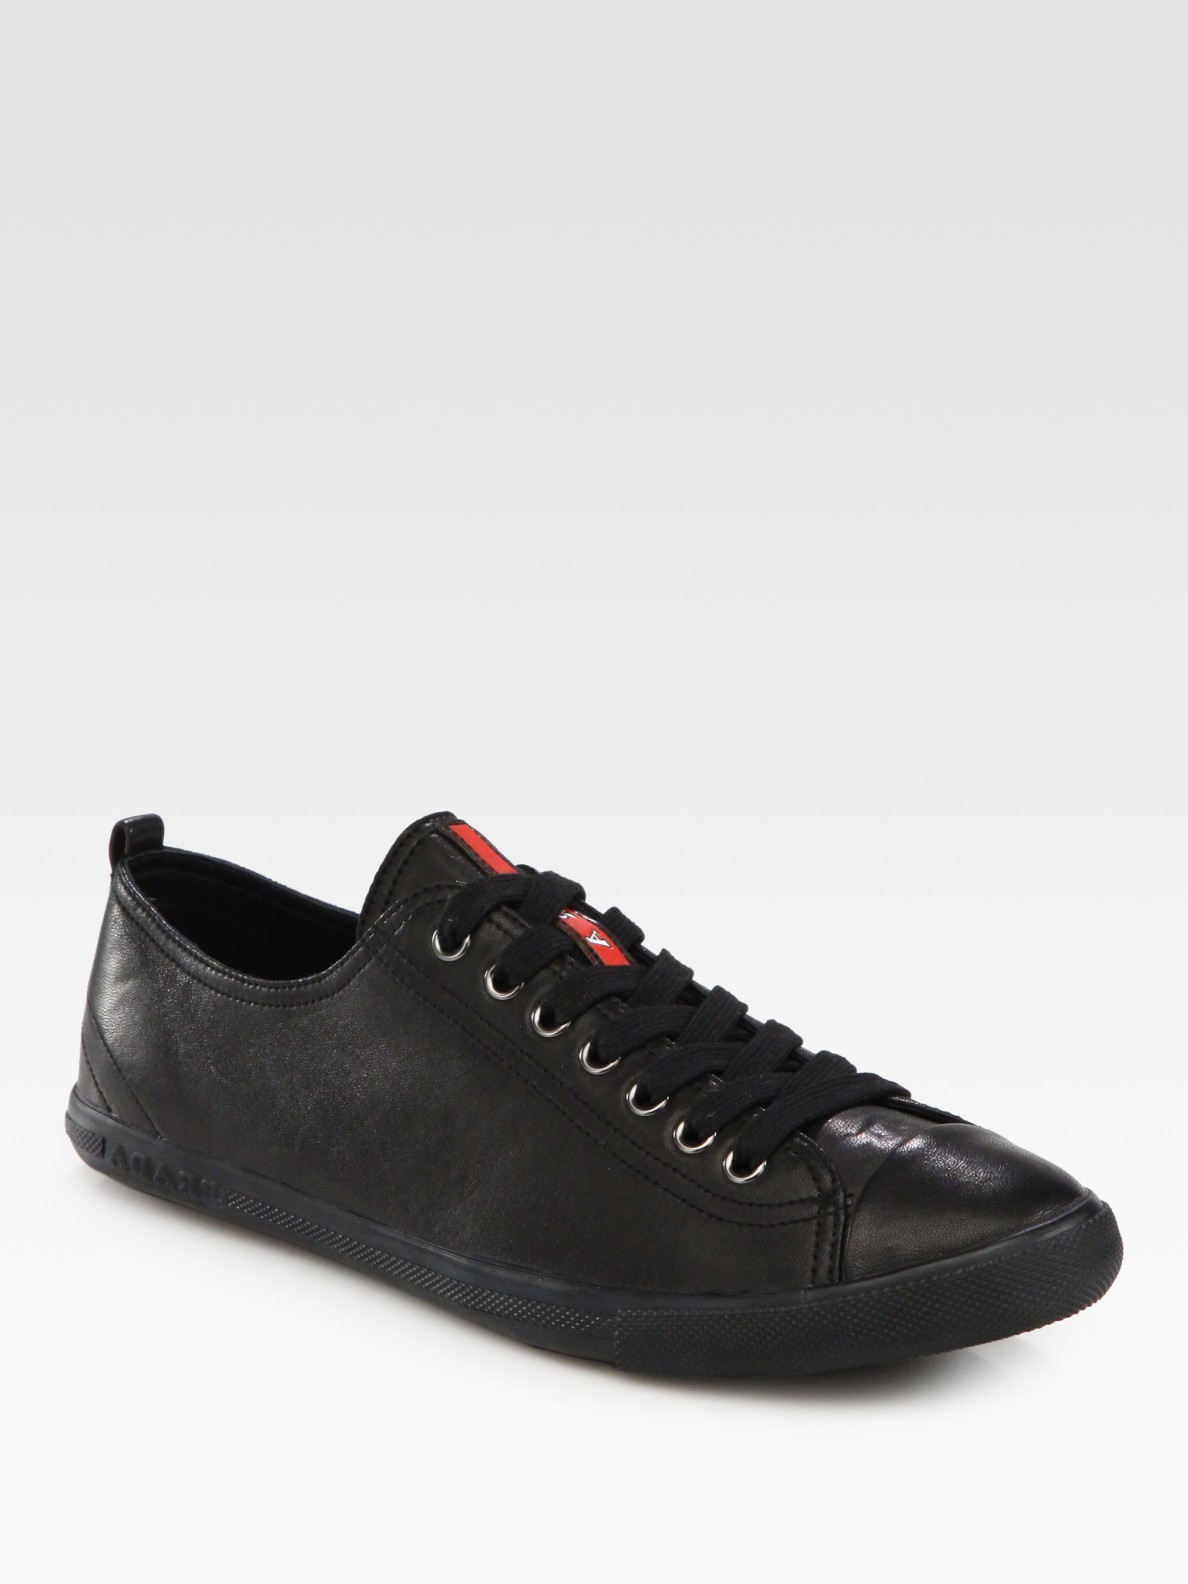 Classic Caps: Prada Cap Toe Leather Sneakers